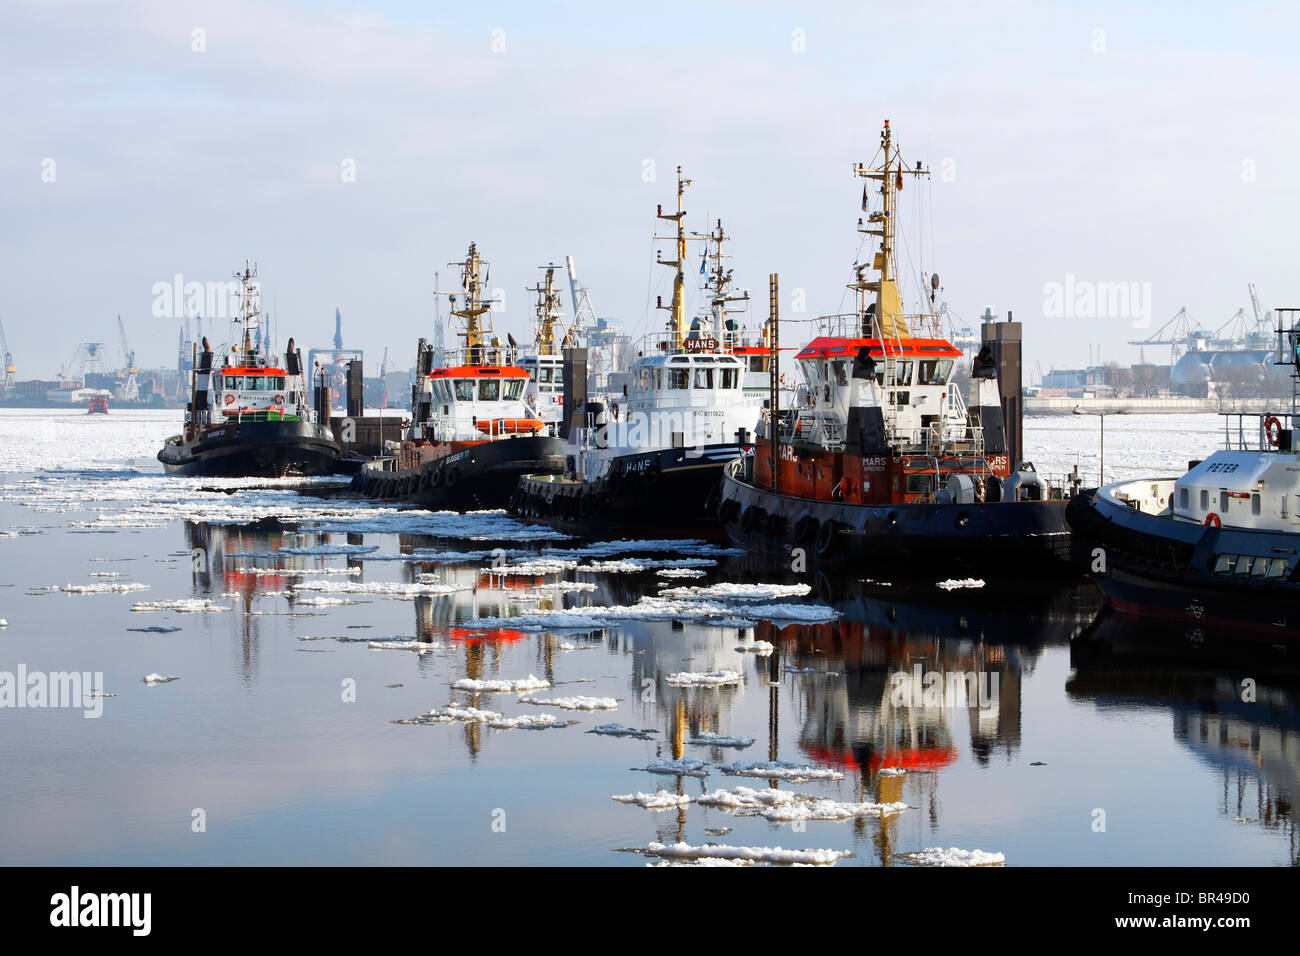 Les navires, les remorqueurs dans le port de Hambourg en hiver dans les eaux glacées de l'Elbe, Neumuehlen wharf, Hambourg, Allemagne, Europe Banque D'Images